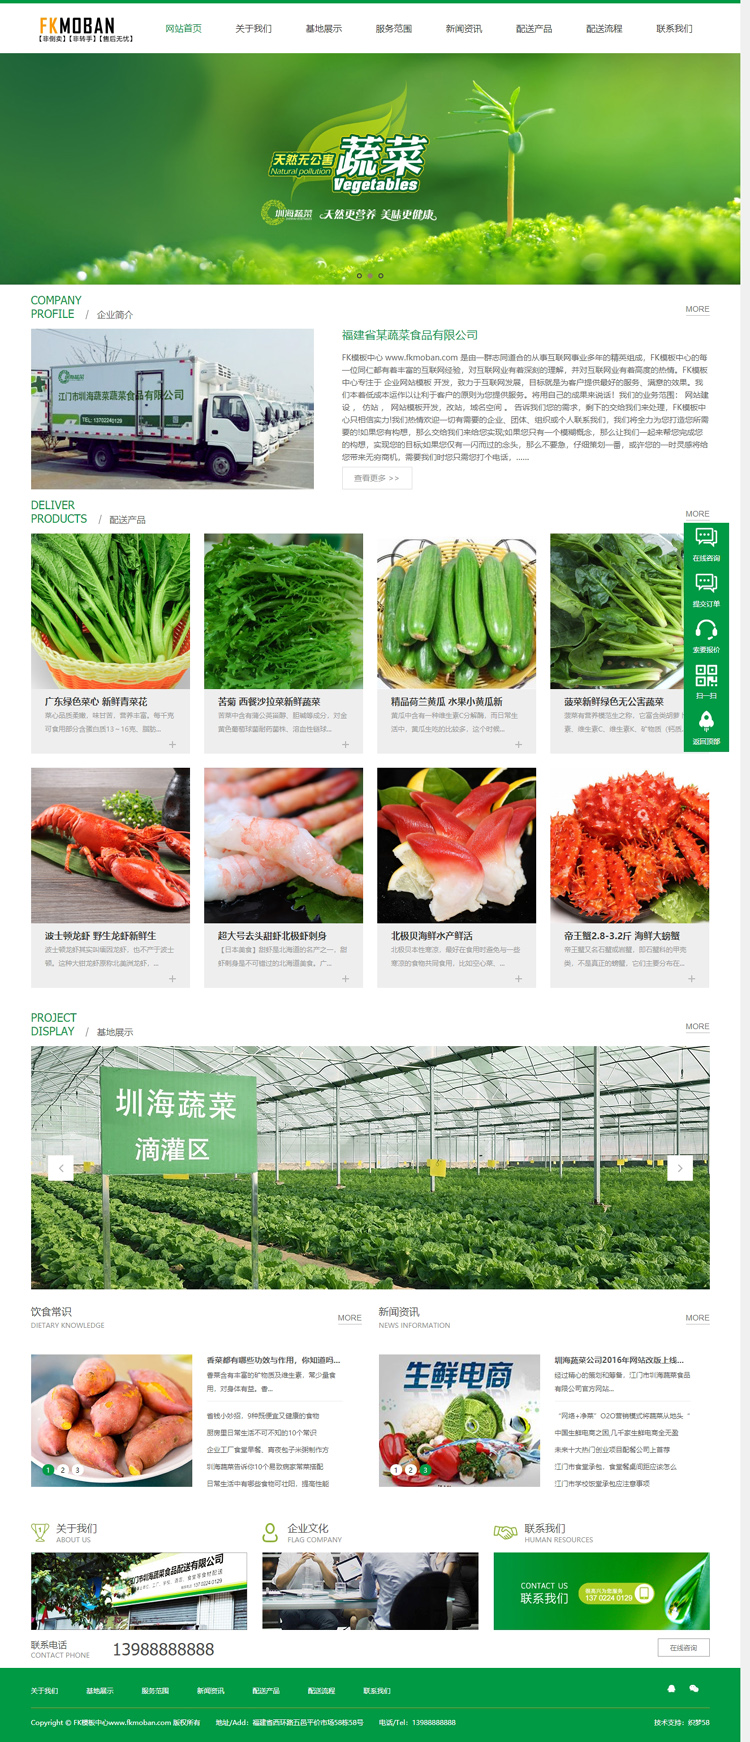 【DedeCMS织梦模板下载】蔬菜网站源码 农业网站模板 dedecms织梦农业网站源码插图